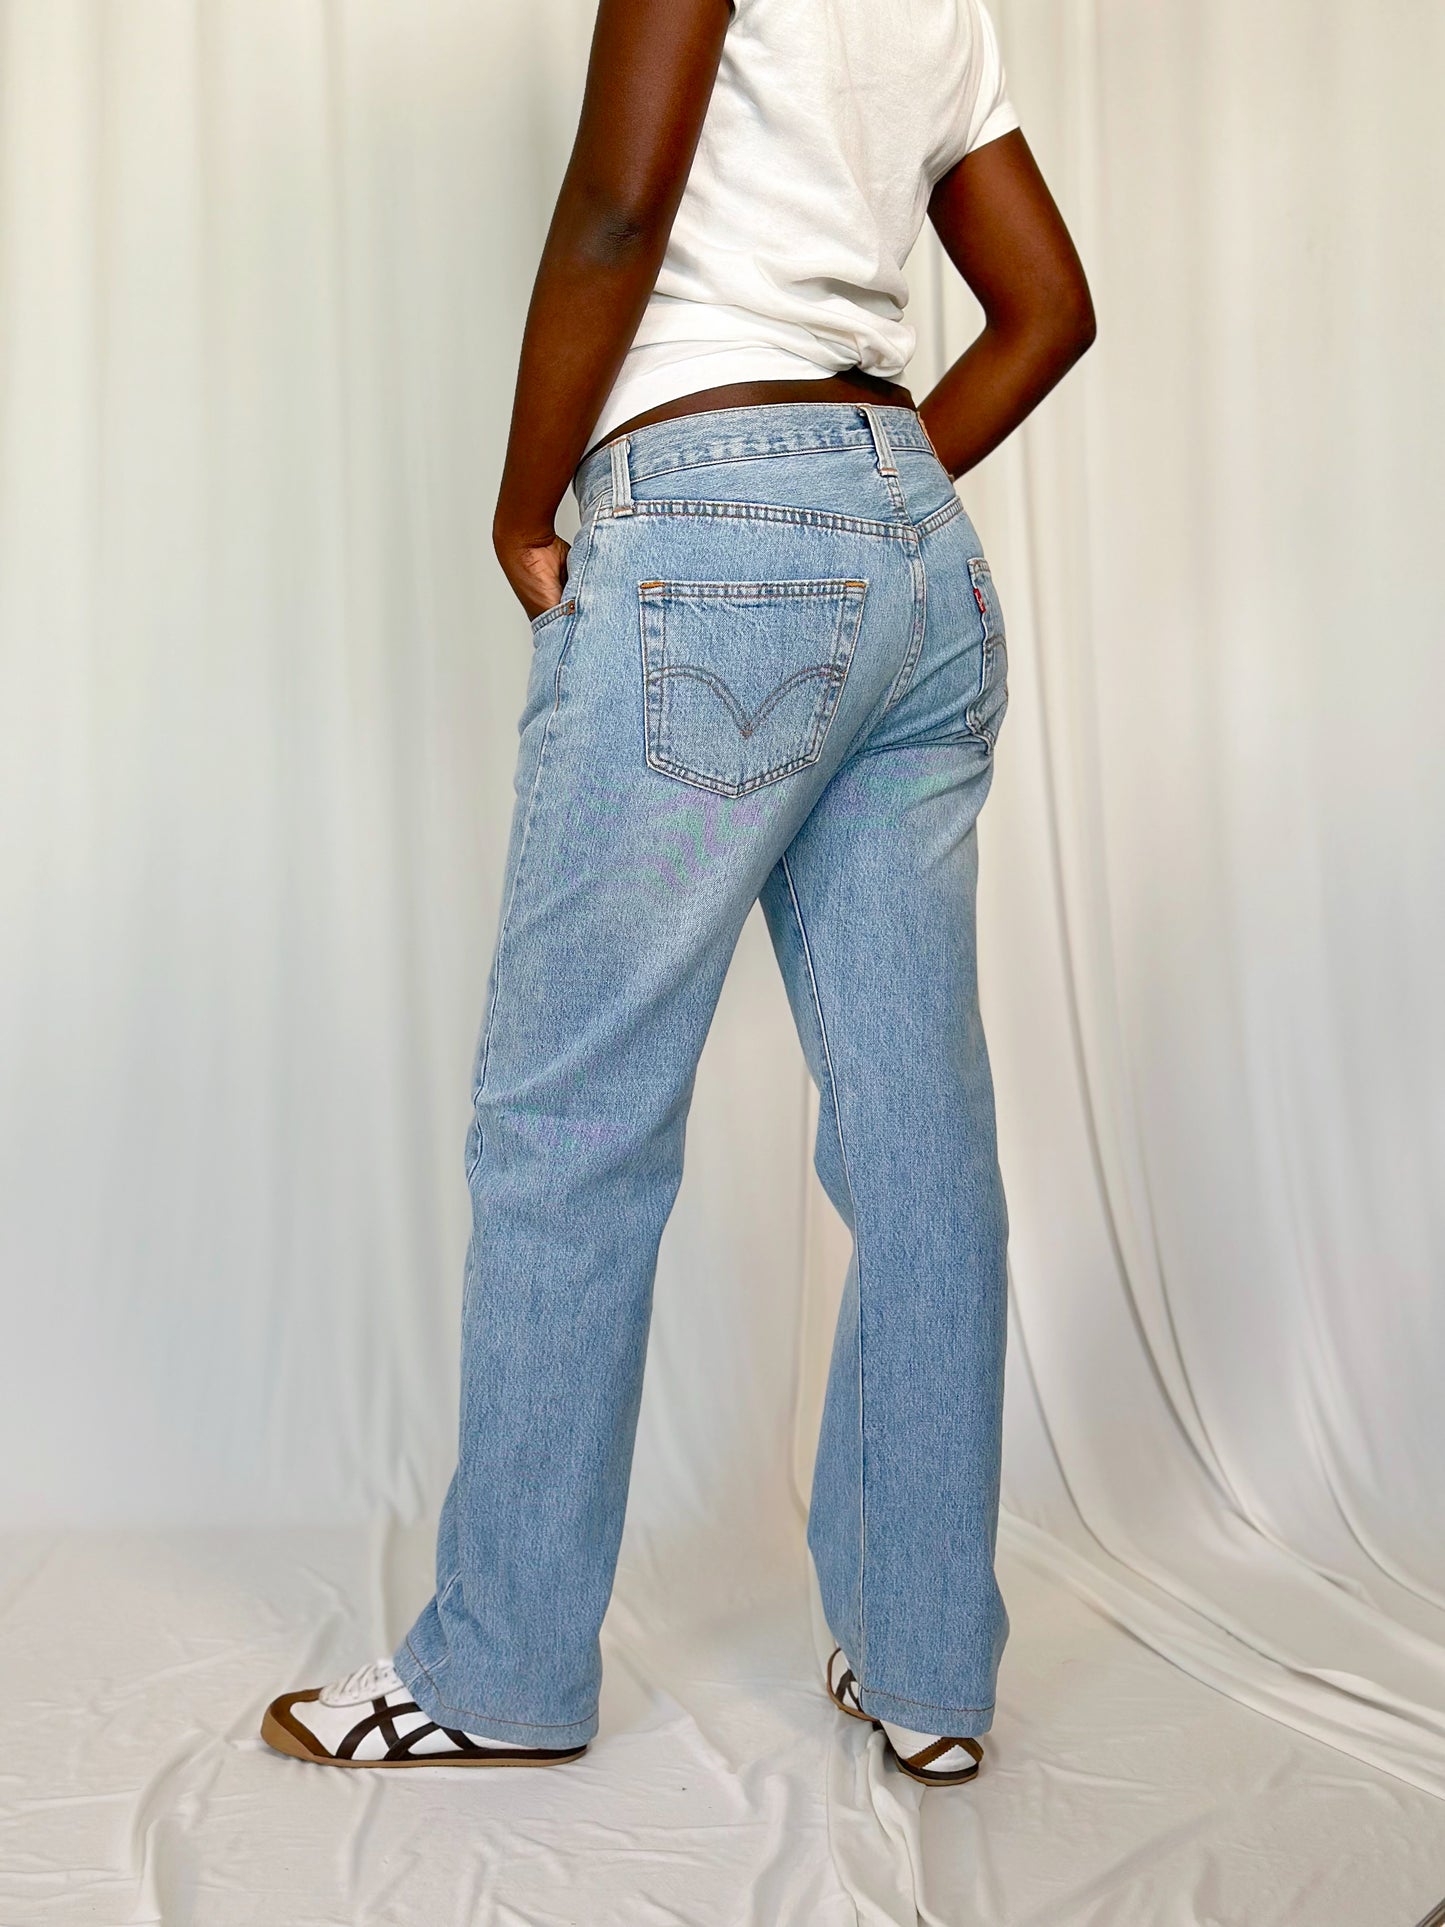 Levi's 501 Jeans [40]